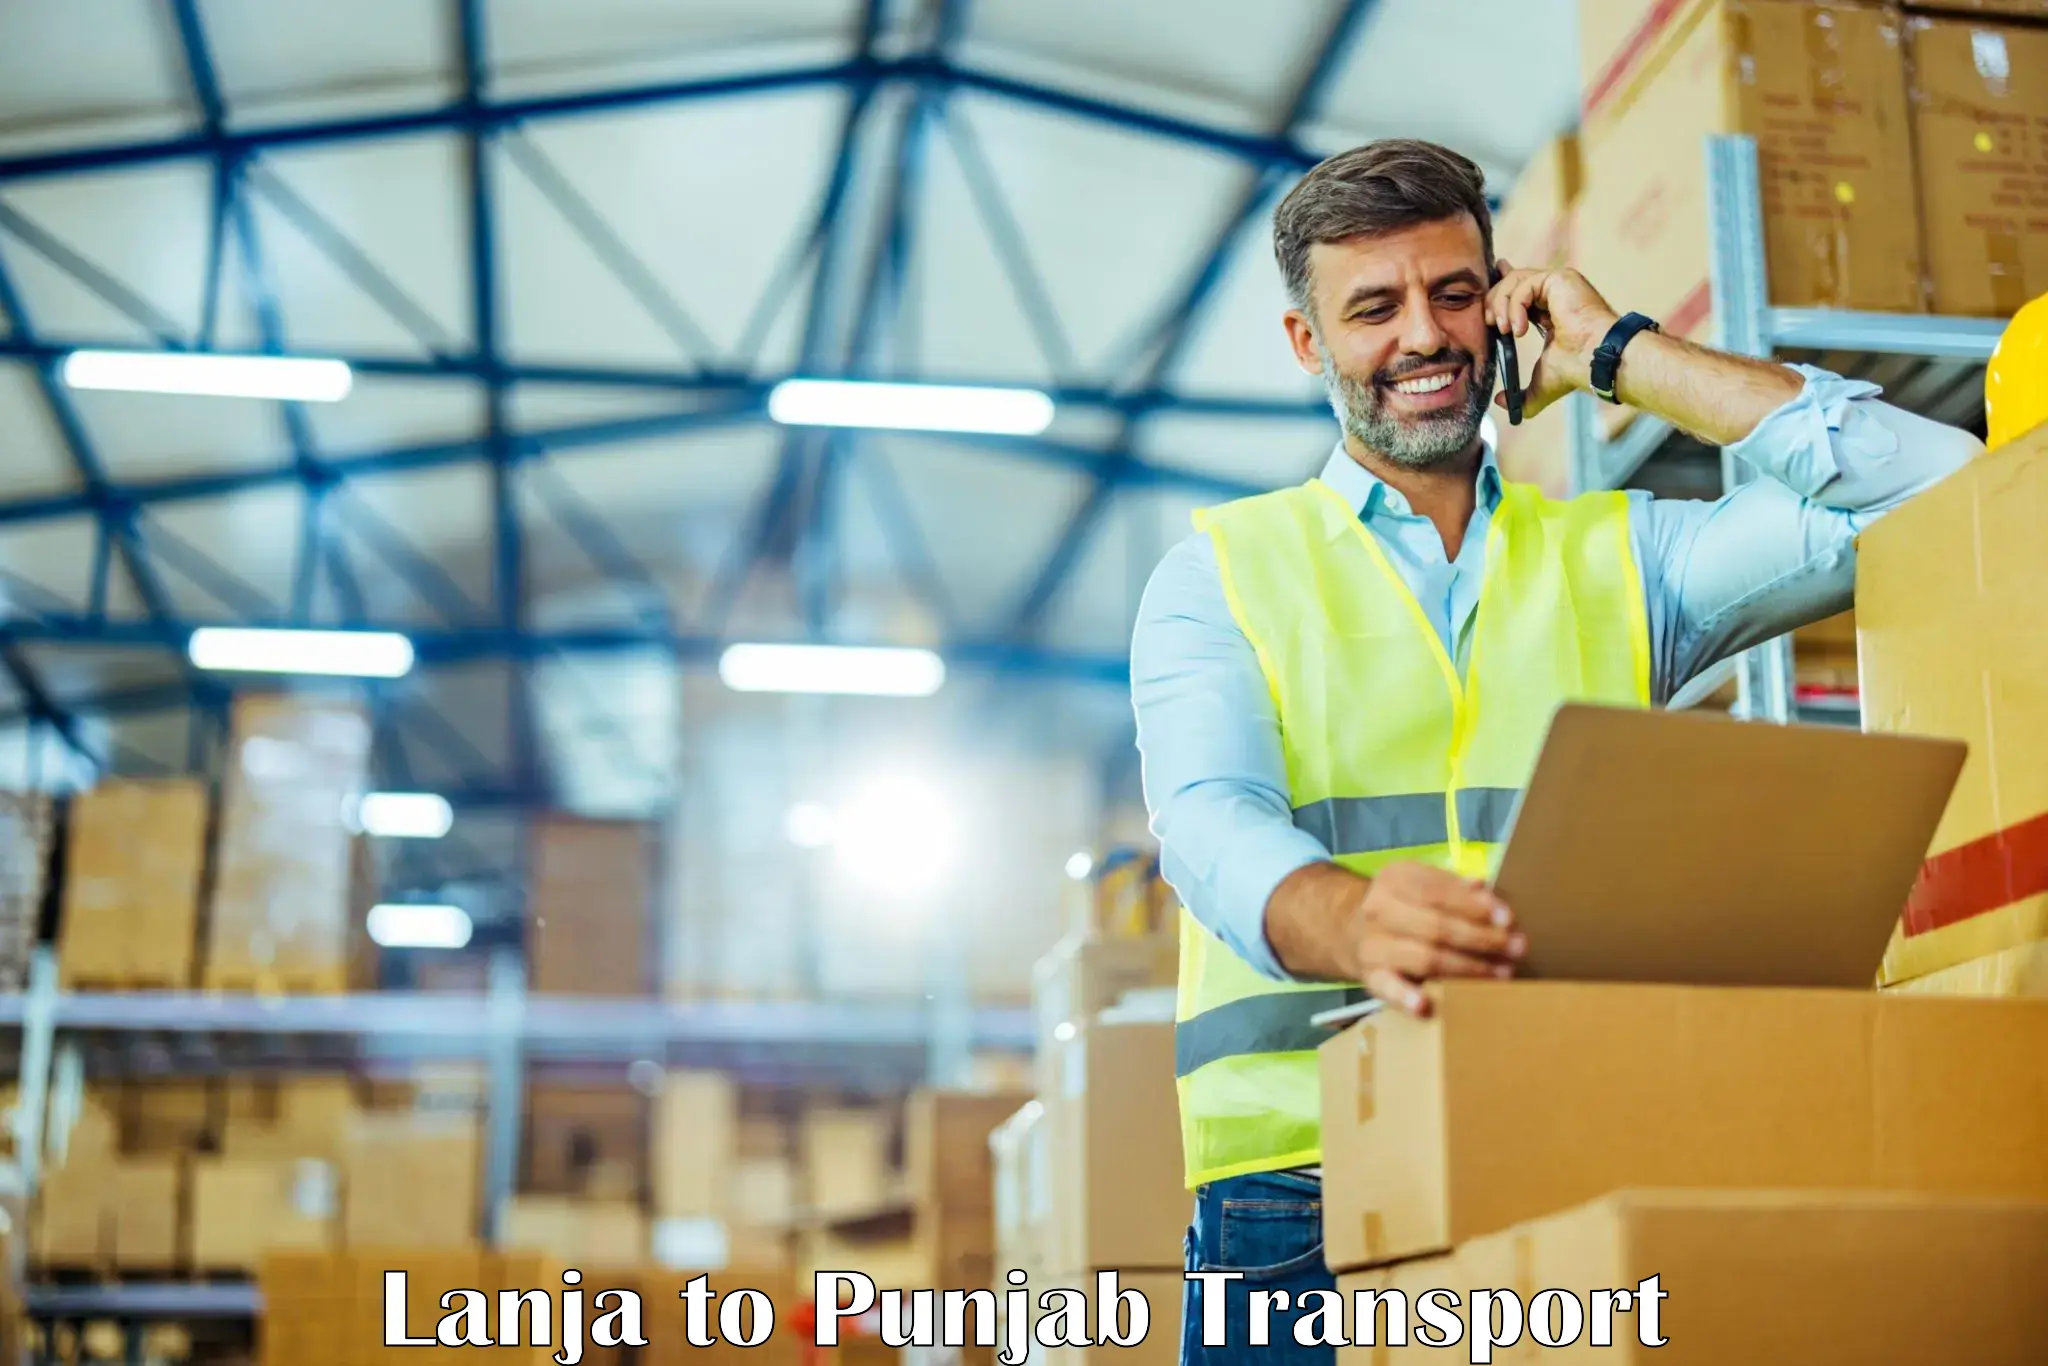 Furniture transport service Lanja to Jalalabad